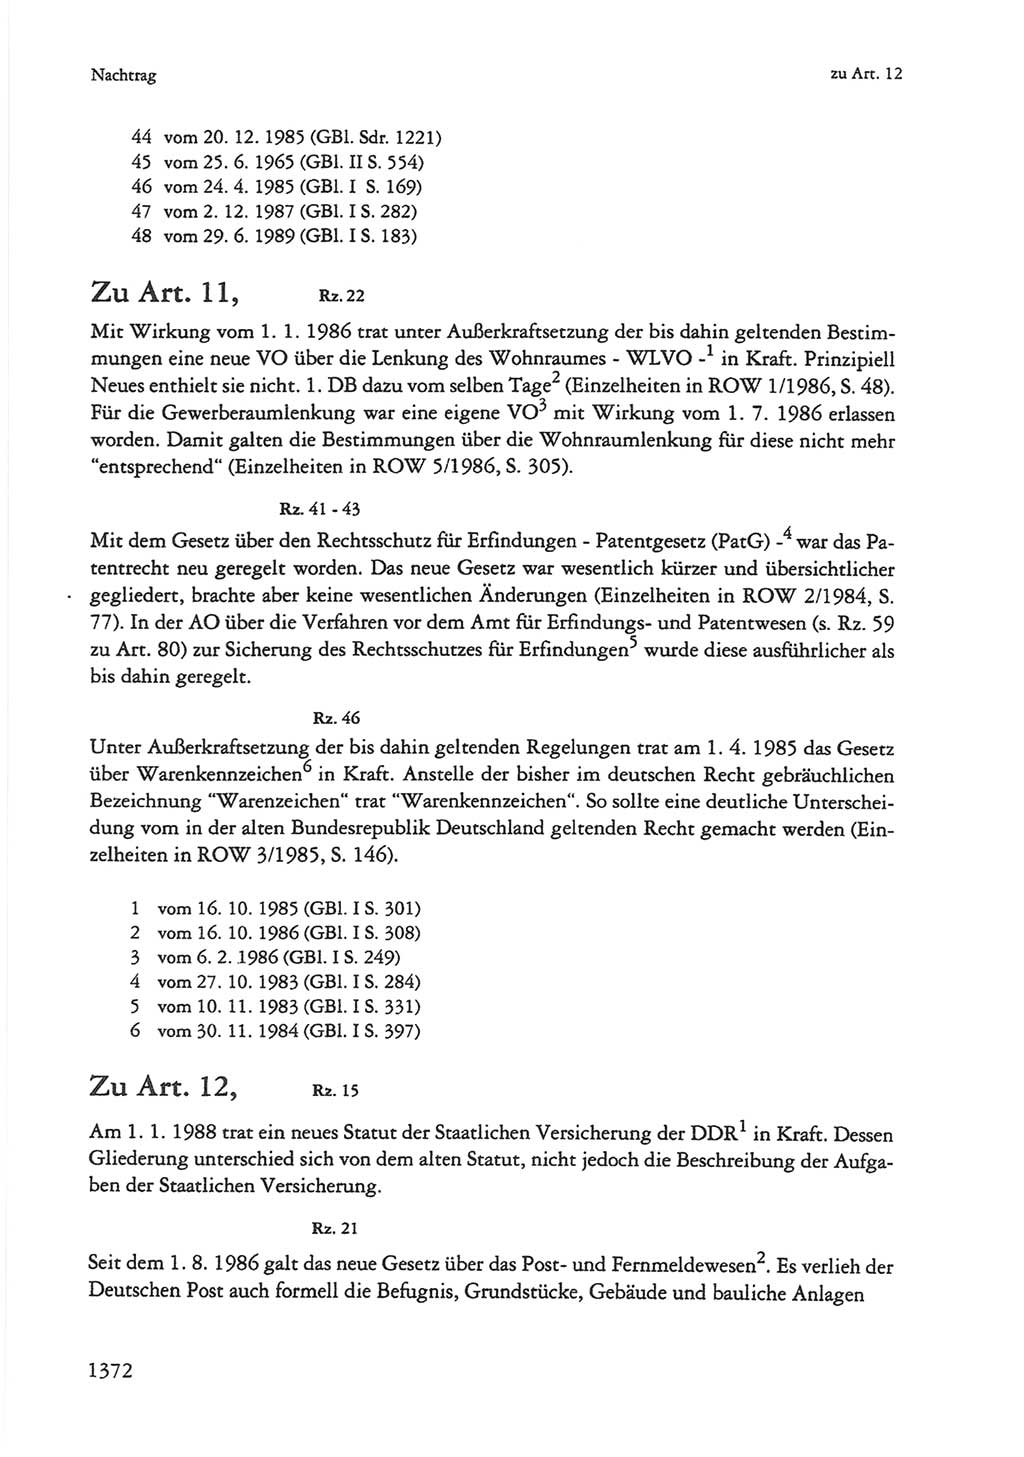 Die sozialistische Verfassung der Deutschen Demokratischen Republik (DDR), Kommentar mit einem Nachtrag 1997, Seite 1372 (Soz. Verf. DDR Komm. Nachtr. 1997, S. 1372)